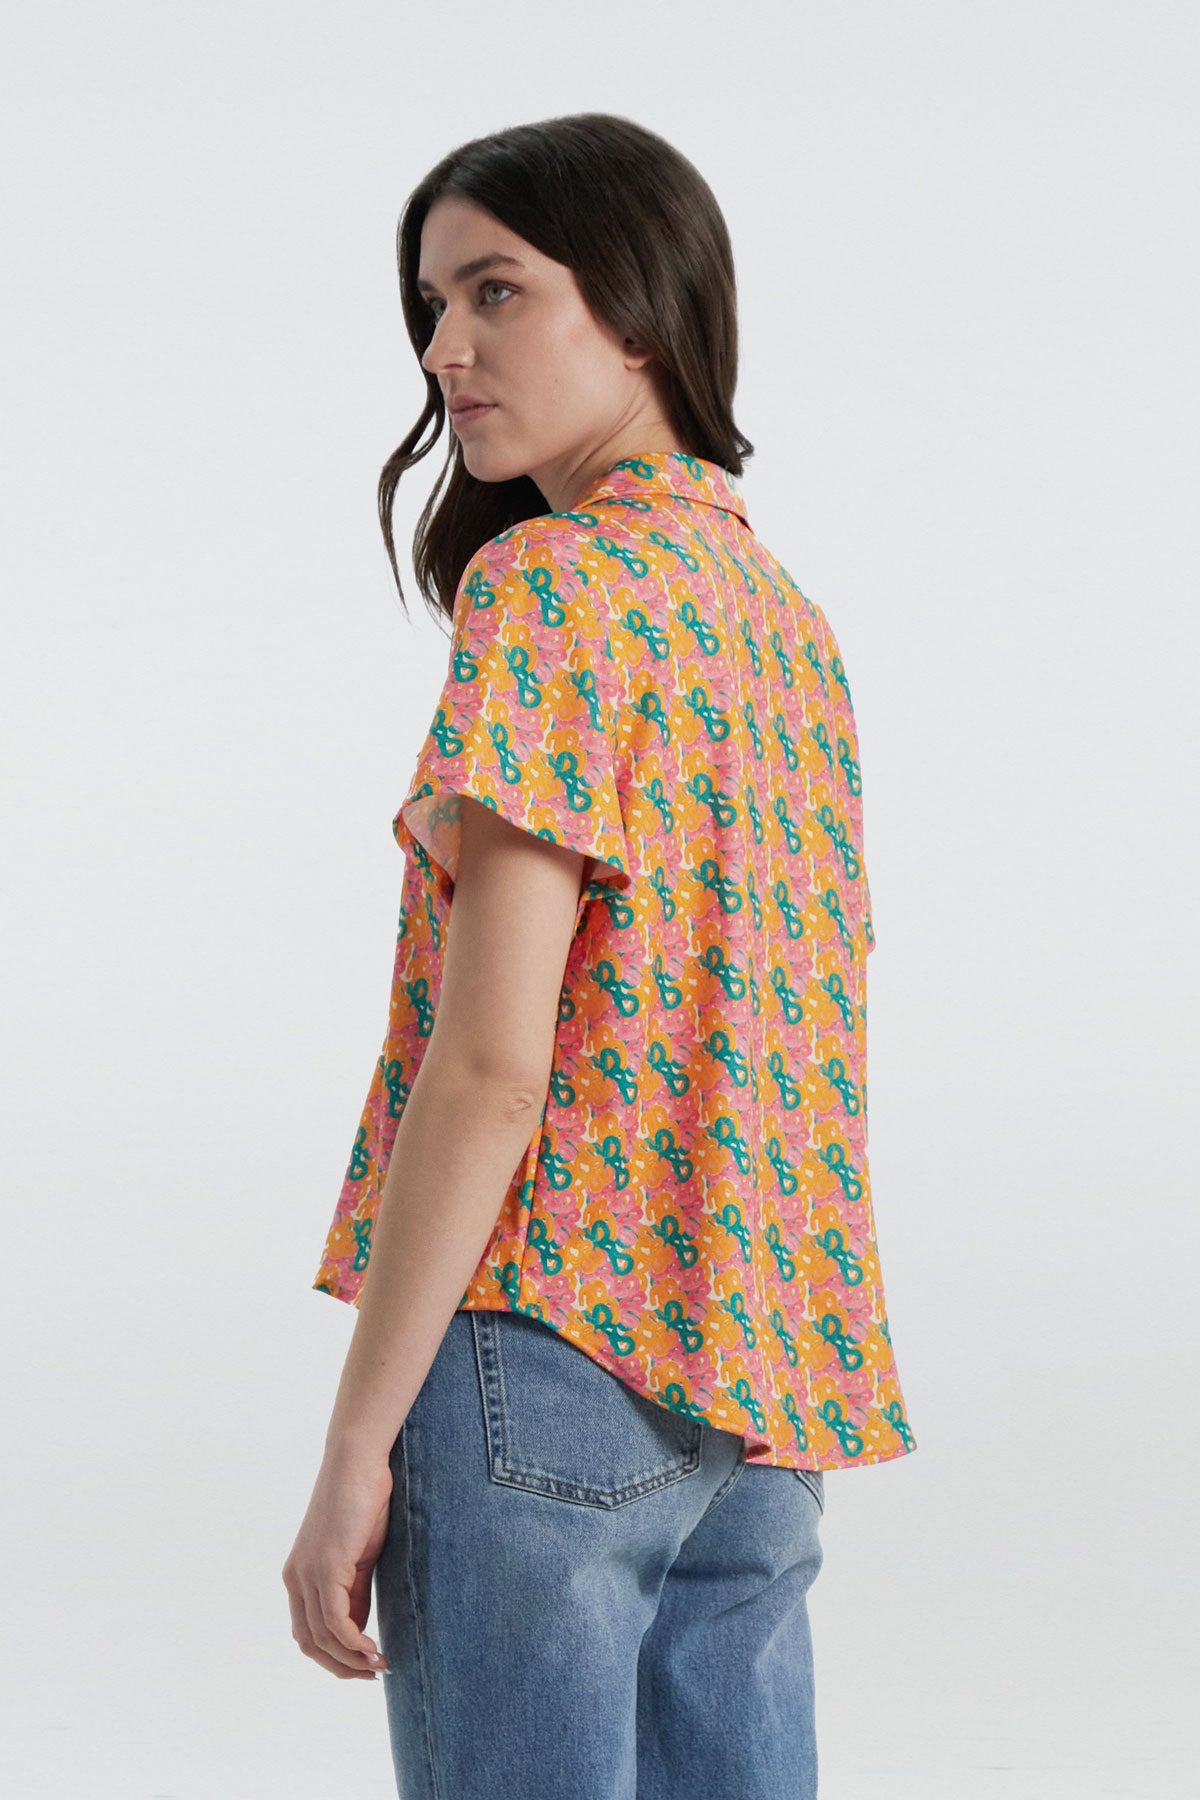 Camisa manga corta con estampado pincel de Sepiia, fresca y elegante, perfecta para el verano. Foto espalda